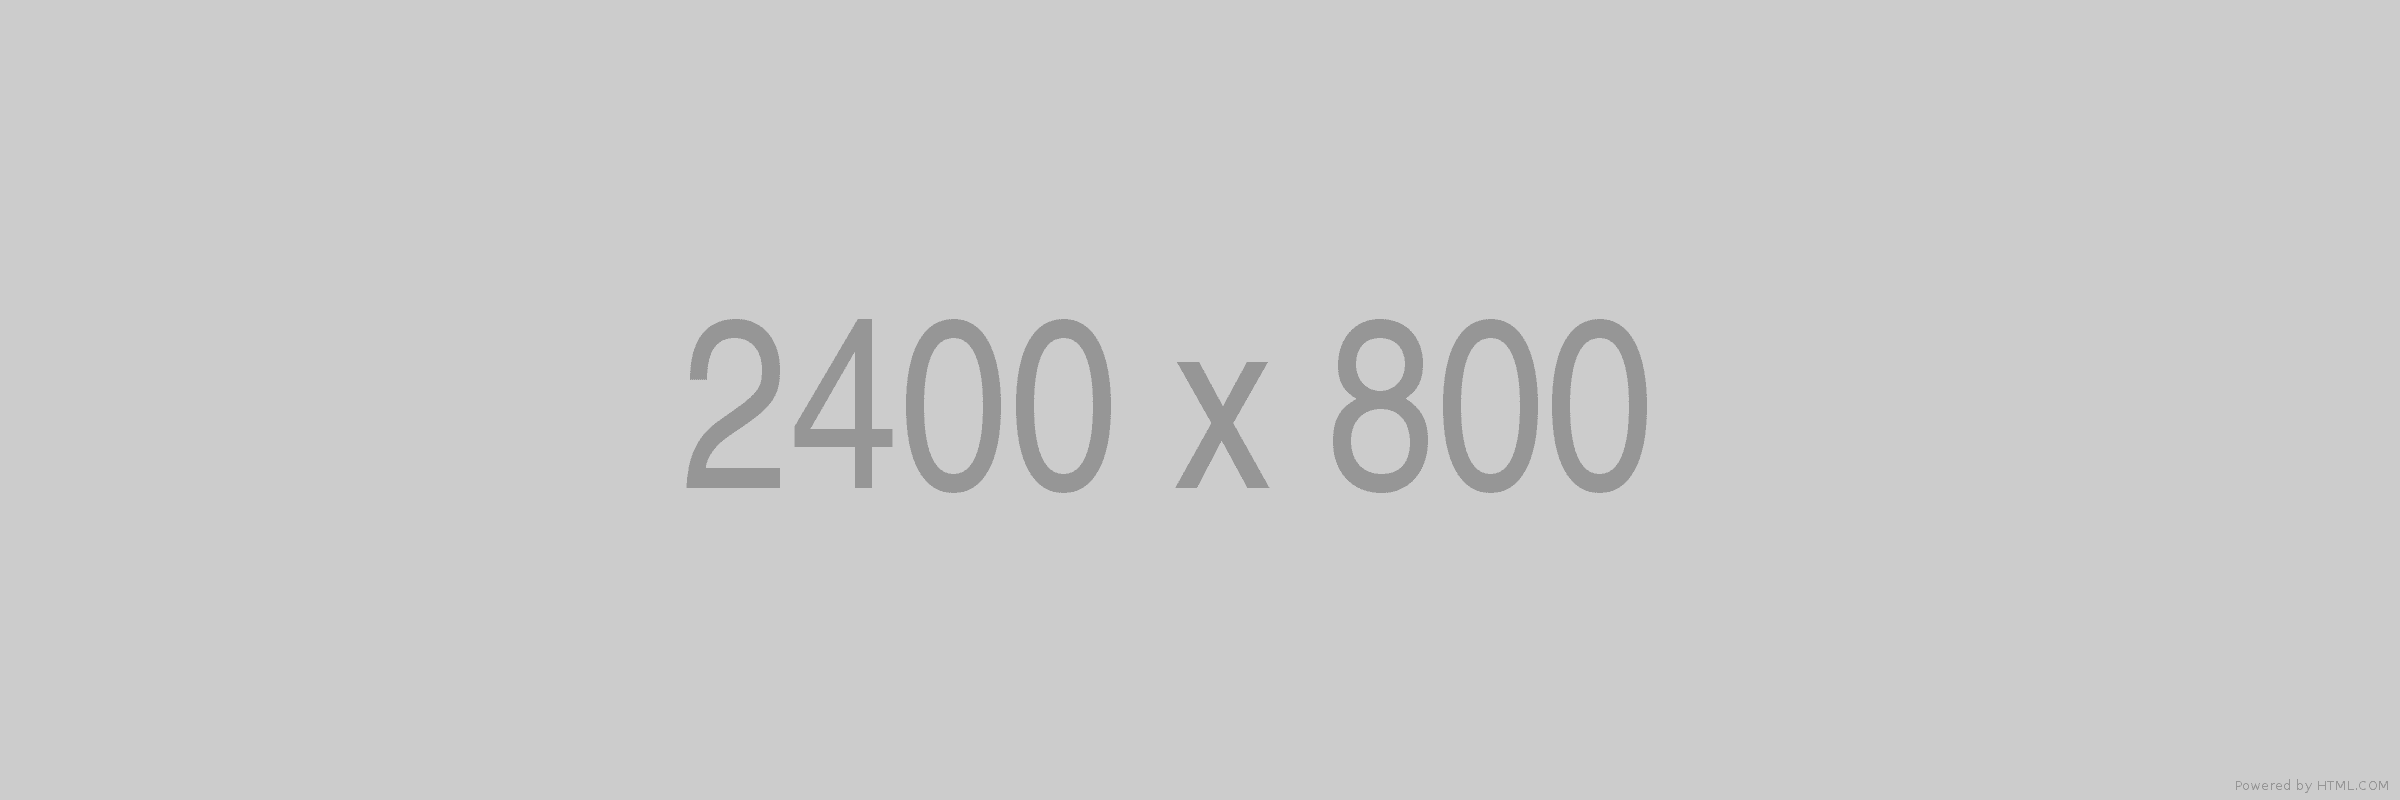 2400x800